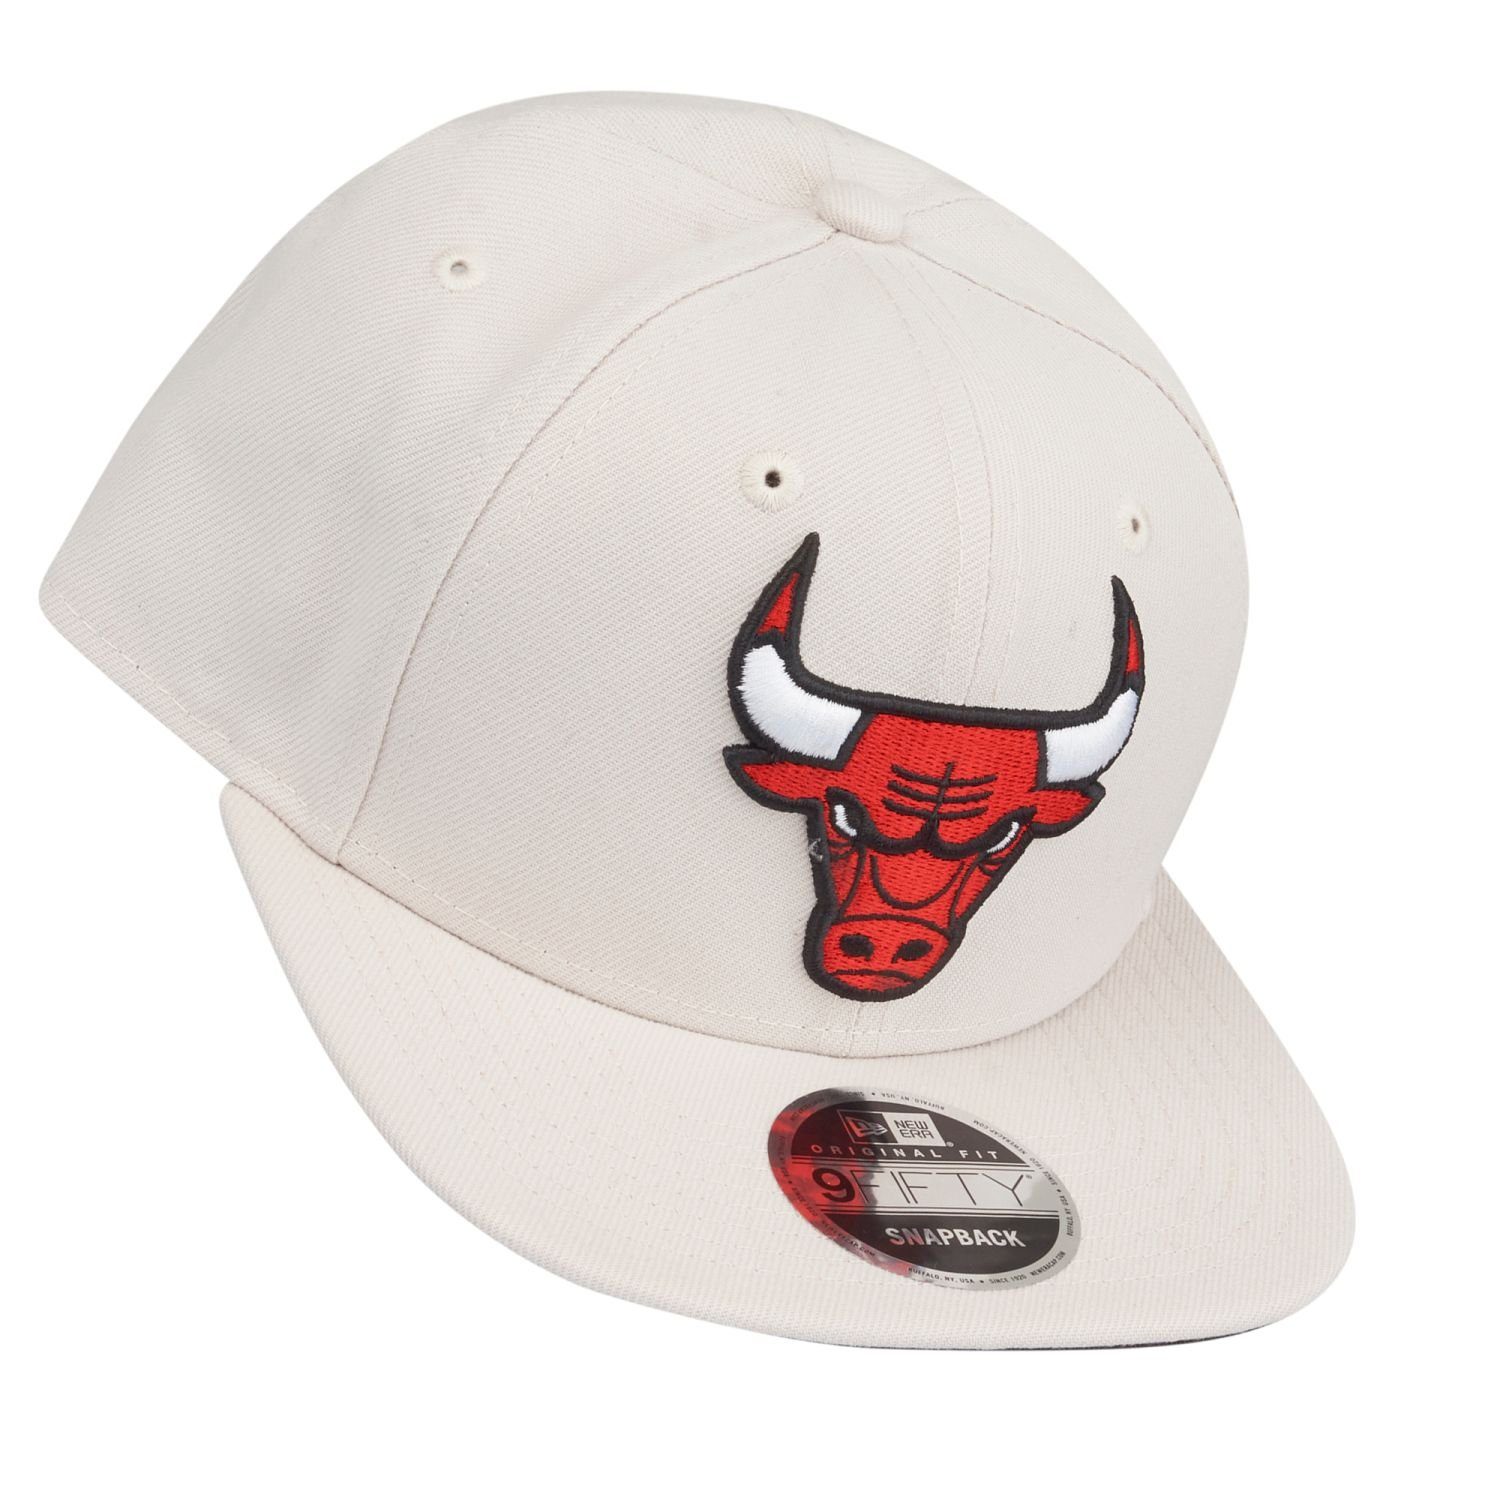 New Era Bulls Snapback Chicago 9Fifty Original Cap